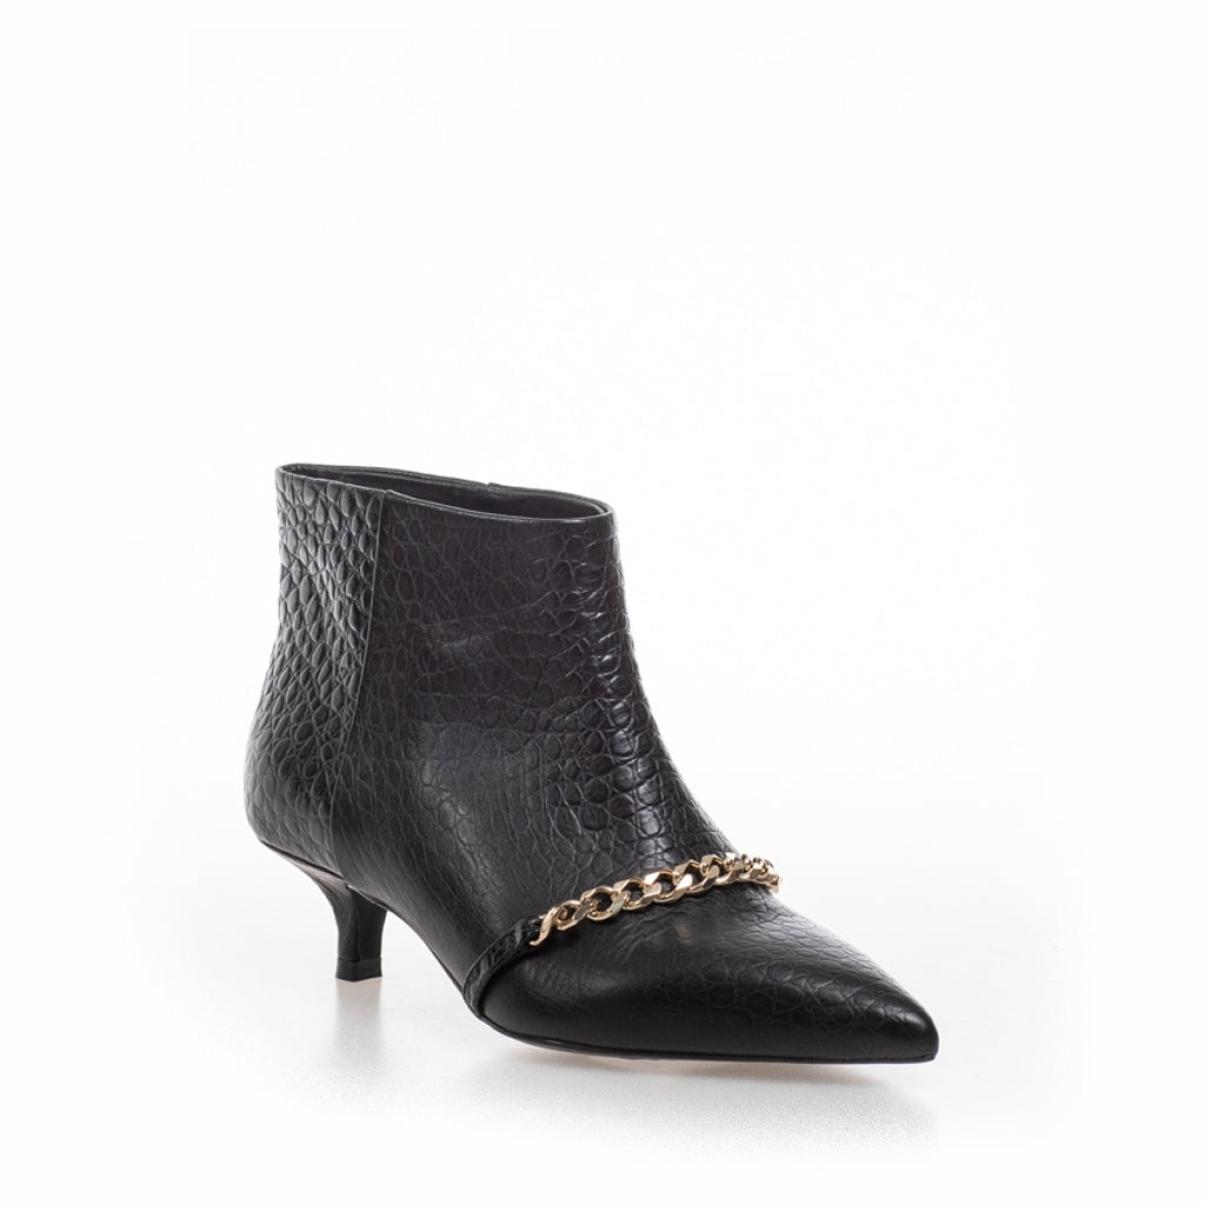 Pari' Chain - Black Croco Clean Women Ankle Boots Copenhagen Shoes - 1